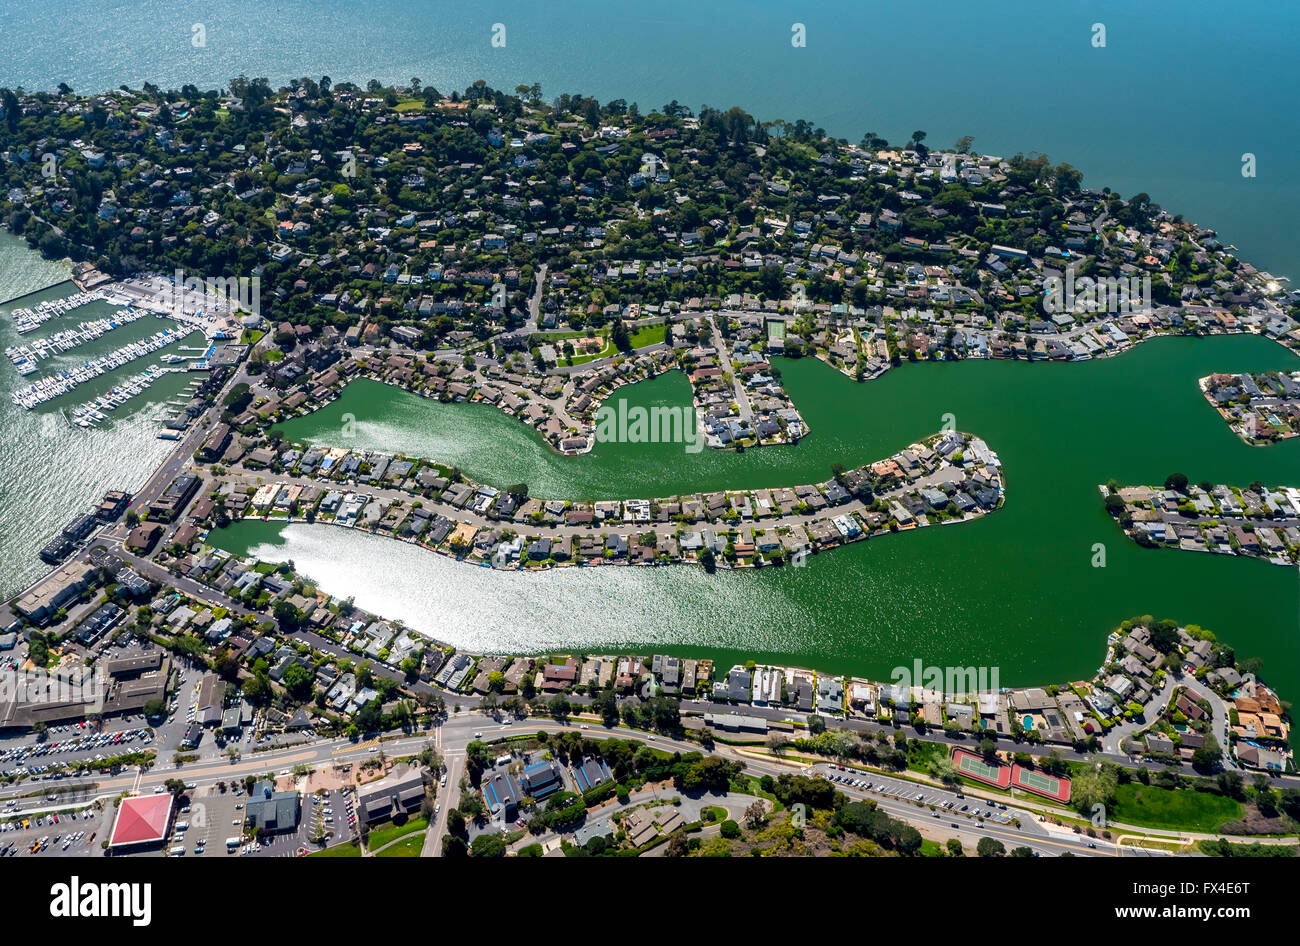 Vue aérienne, des maisons au bord de l'eau, presqu'île Belvedere Tiburon, Baie de San Francisco, États-Unis d'Amérique, Californie Banque D'Images